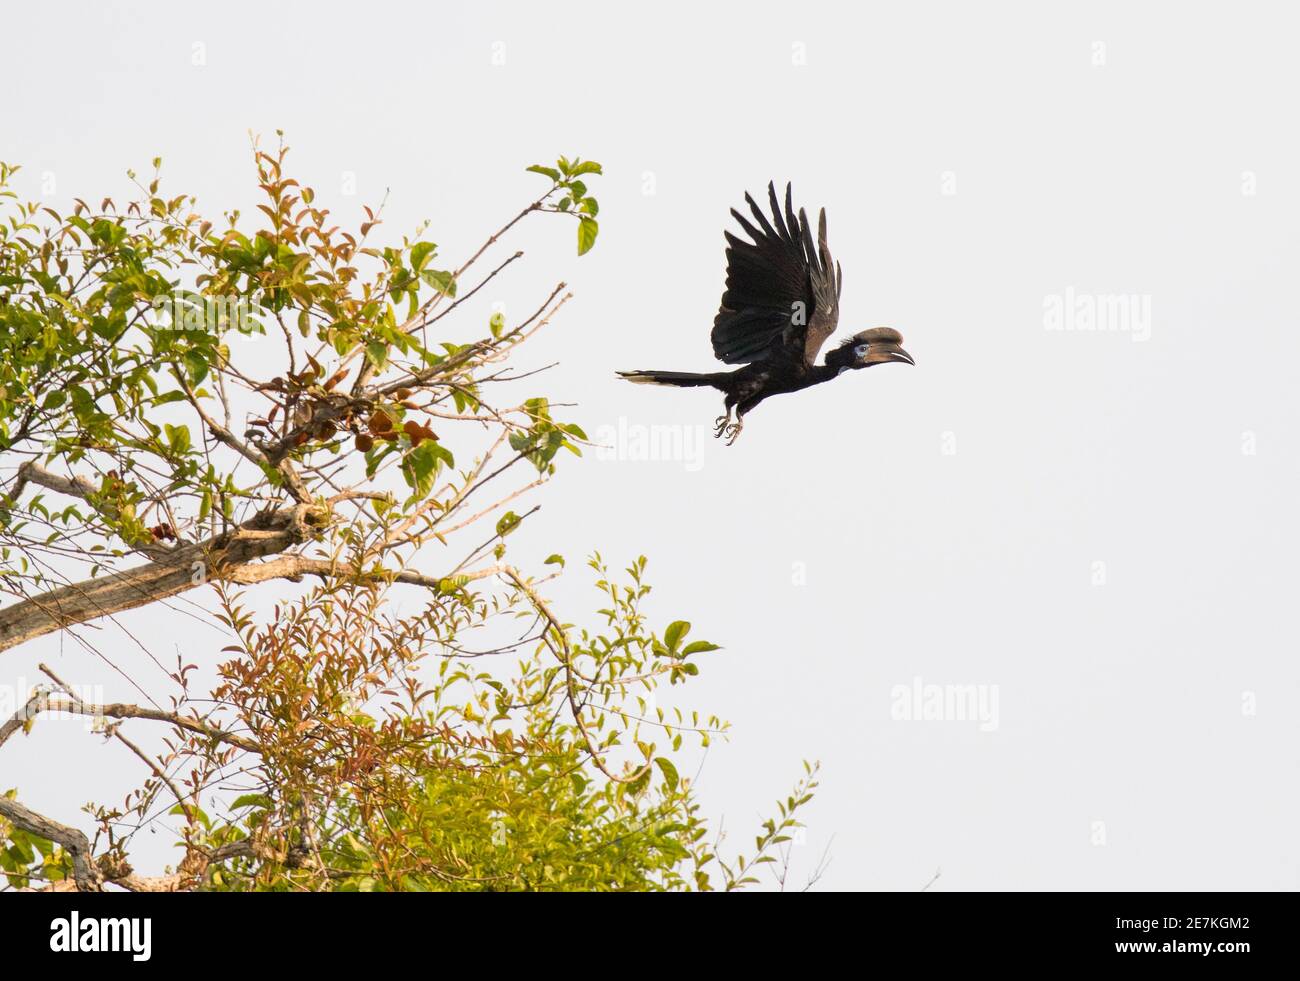 Black-casqued Hornbill (Ceratogymna atrata) in flight, Loango National Park, Gabon. Stock Photo